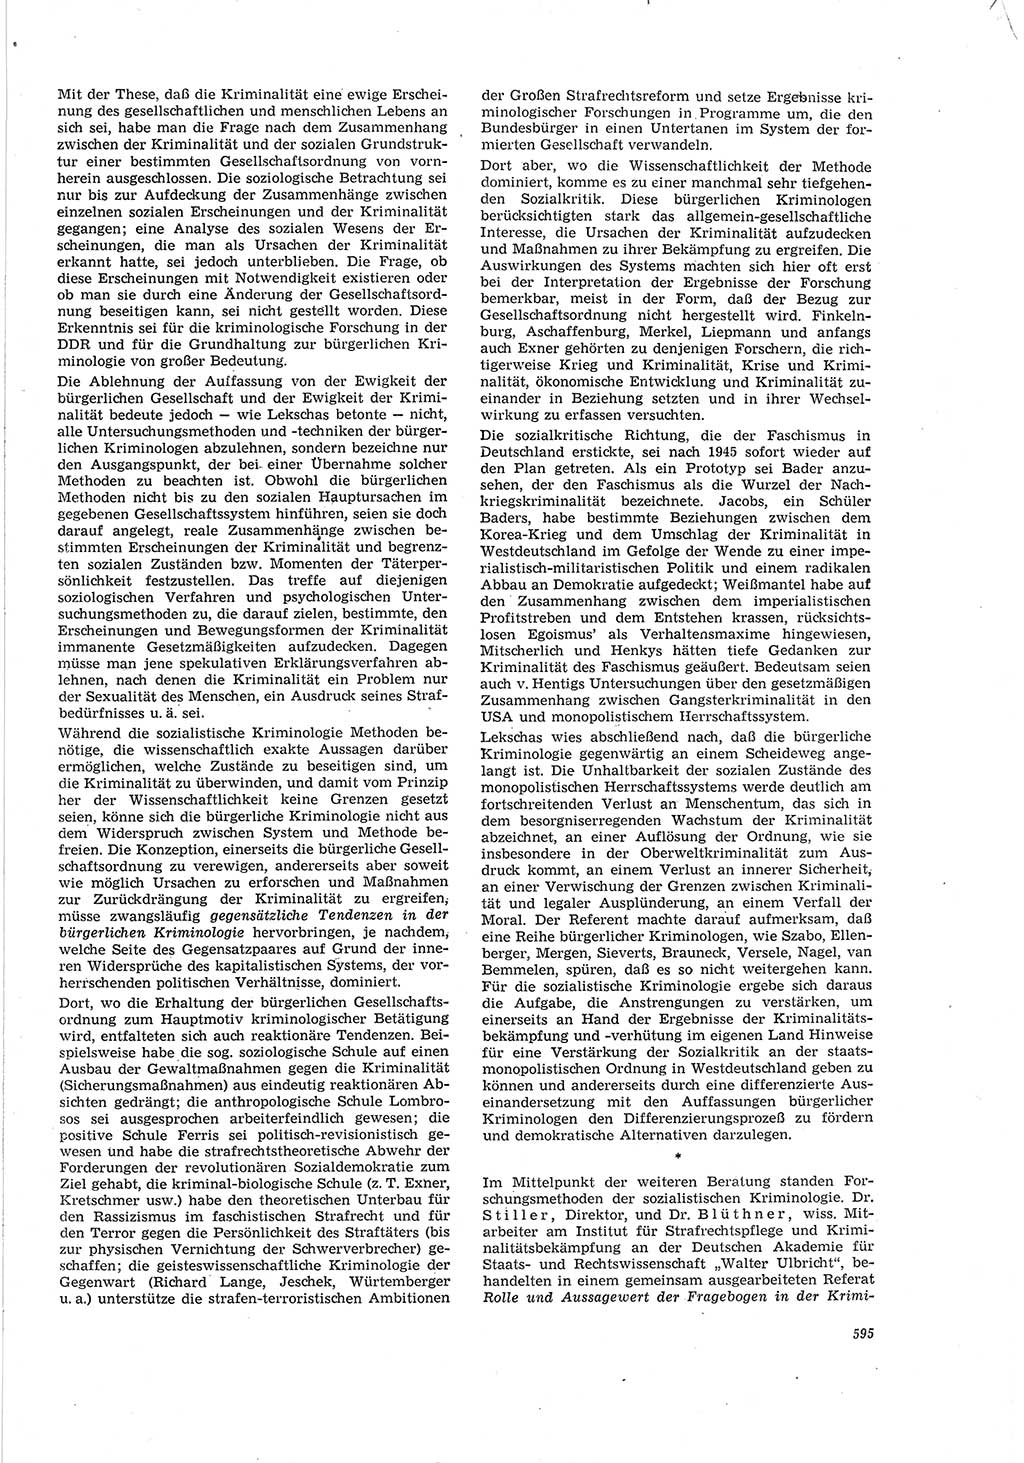 Neue Justiz (NJ), Zeitschrift für Recht und Rechtswissenschaft [Deutsche Demokratische Republik (DDR)], 20. Jahrgang 1966, Seite 595 (NJ DDR 1966, S. 595)